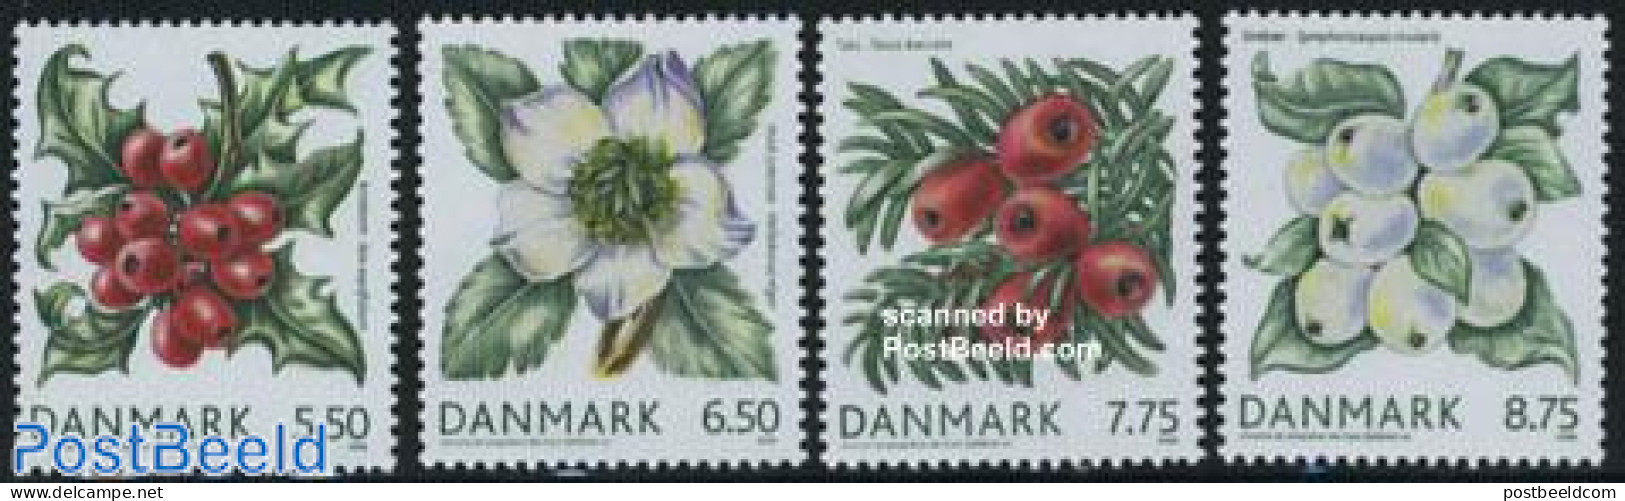 Denmark 2008 Berries 4v, Mint NH, Nature - Flowers & Plants - Fruit - Neufs